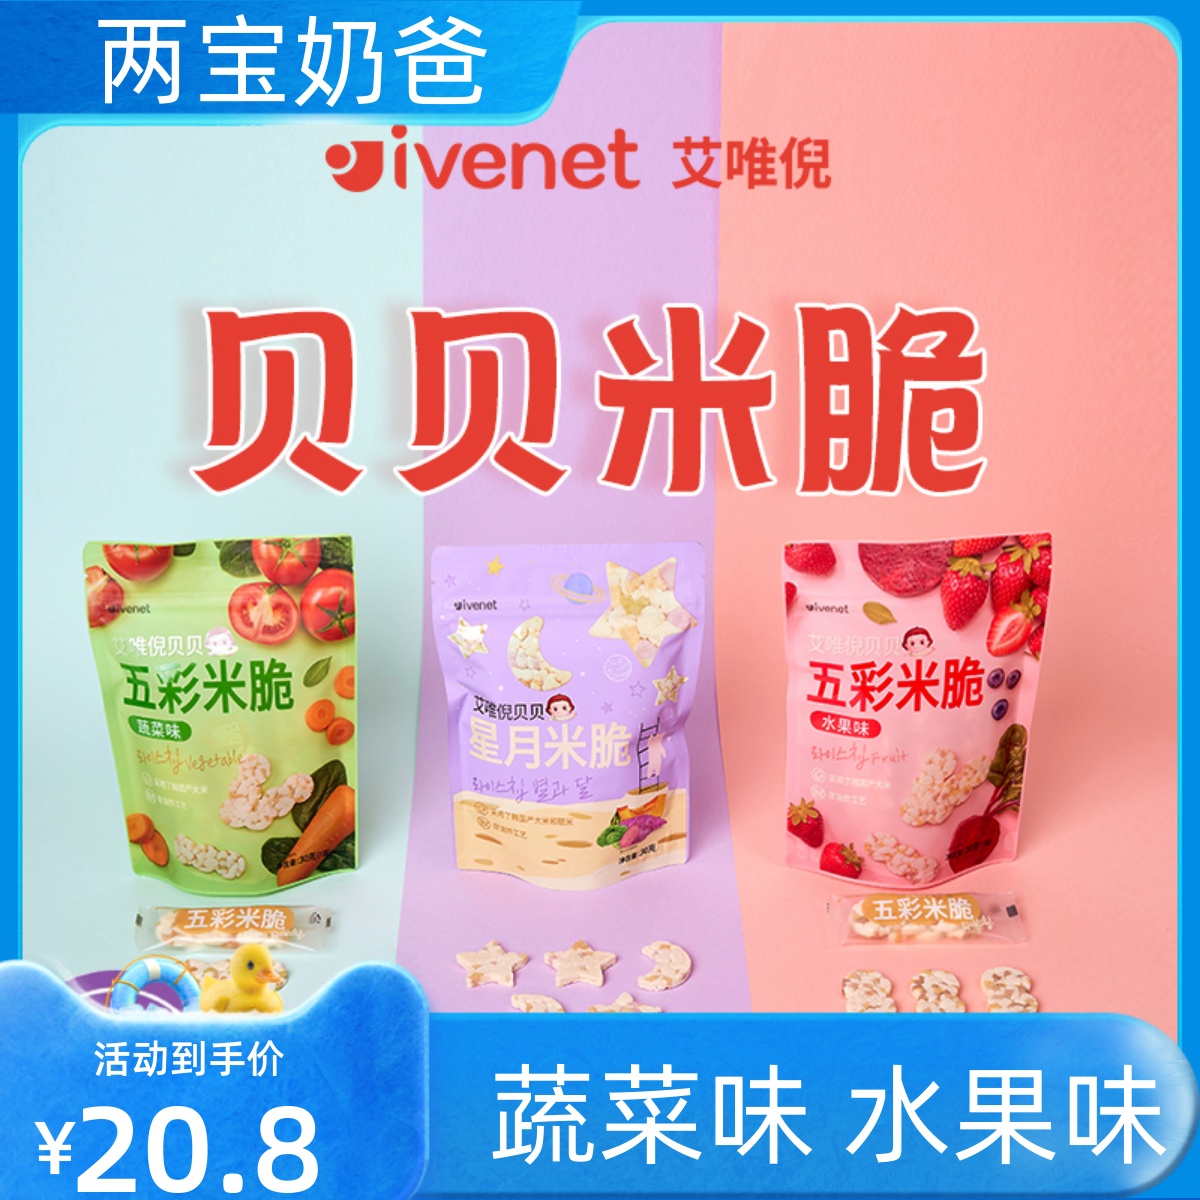 艾唯倪ivenet五彩米脆米饼干儿童宝宝零食蔬菜味 30g韩国原装进口